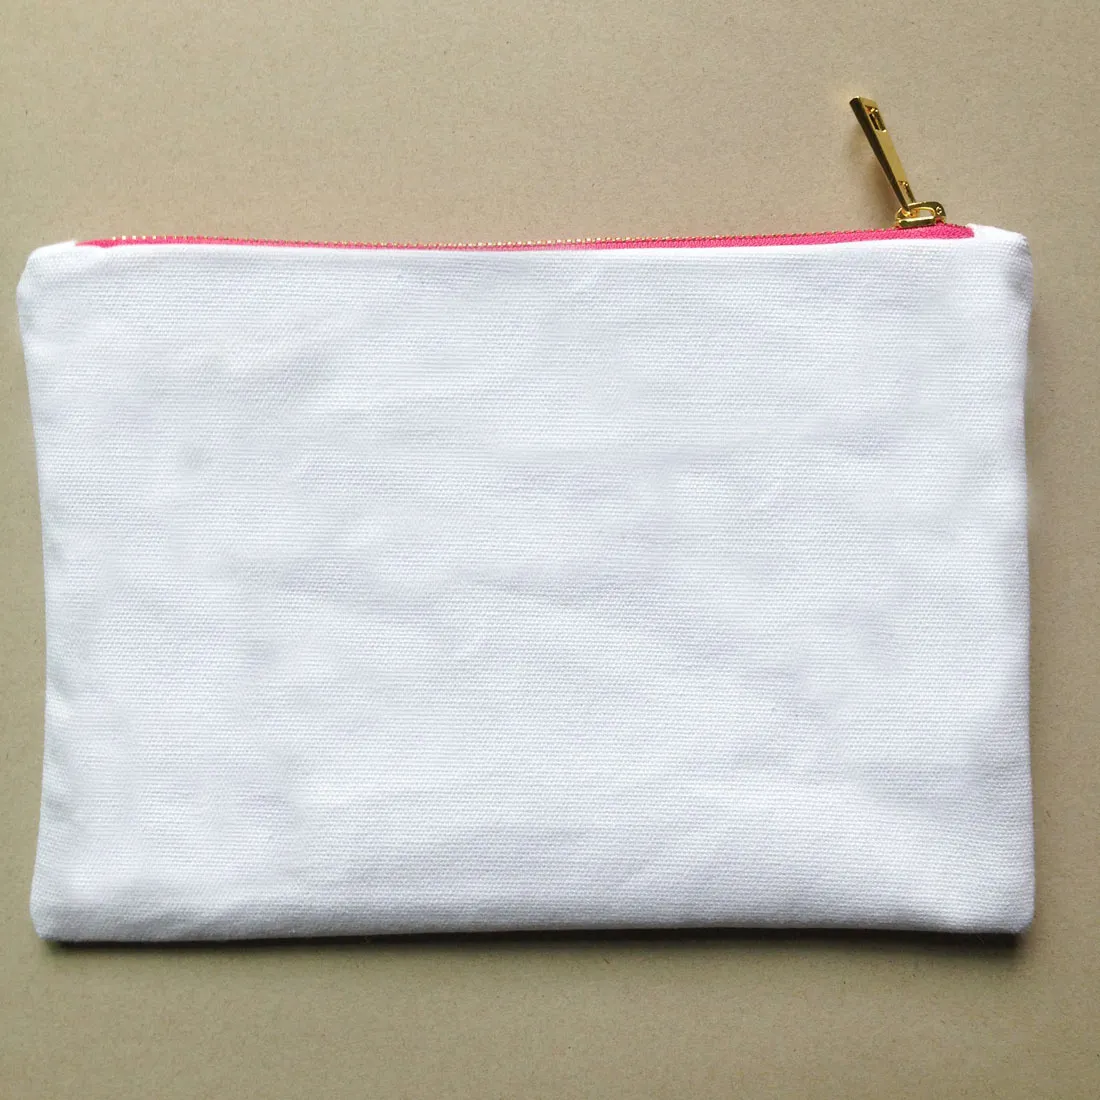 toile de coton uni blanc composent le sac avec doublure zip en or de qualité supérieure 7x10in solide sac de toilette de couleur pour la peinture de bricolage / impression noir / blanc / ivoire